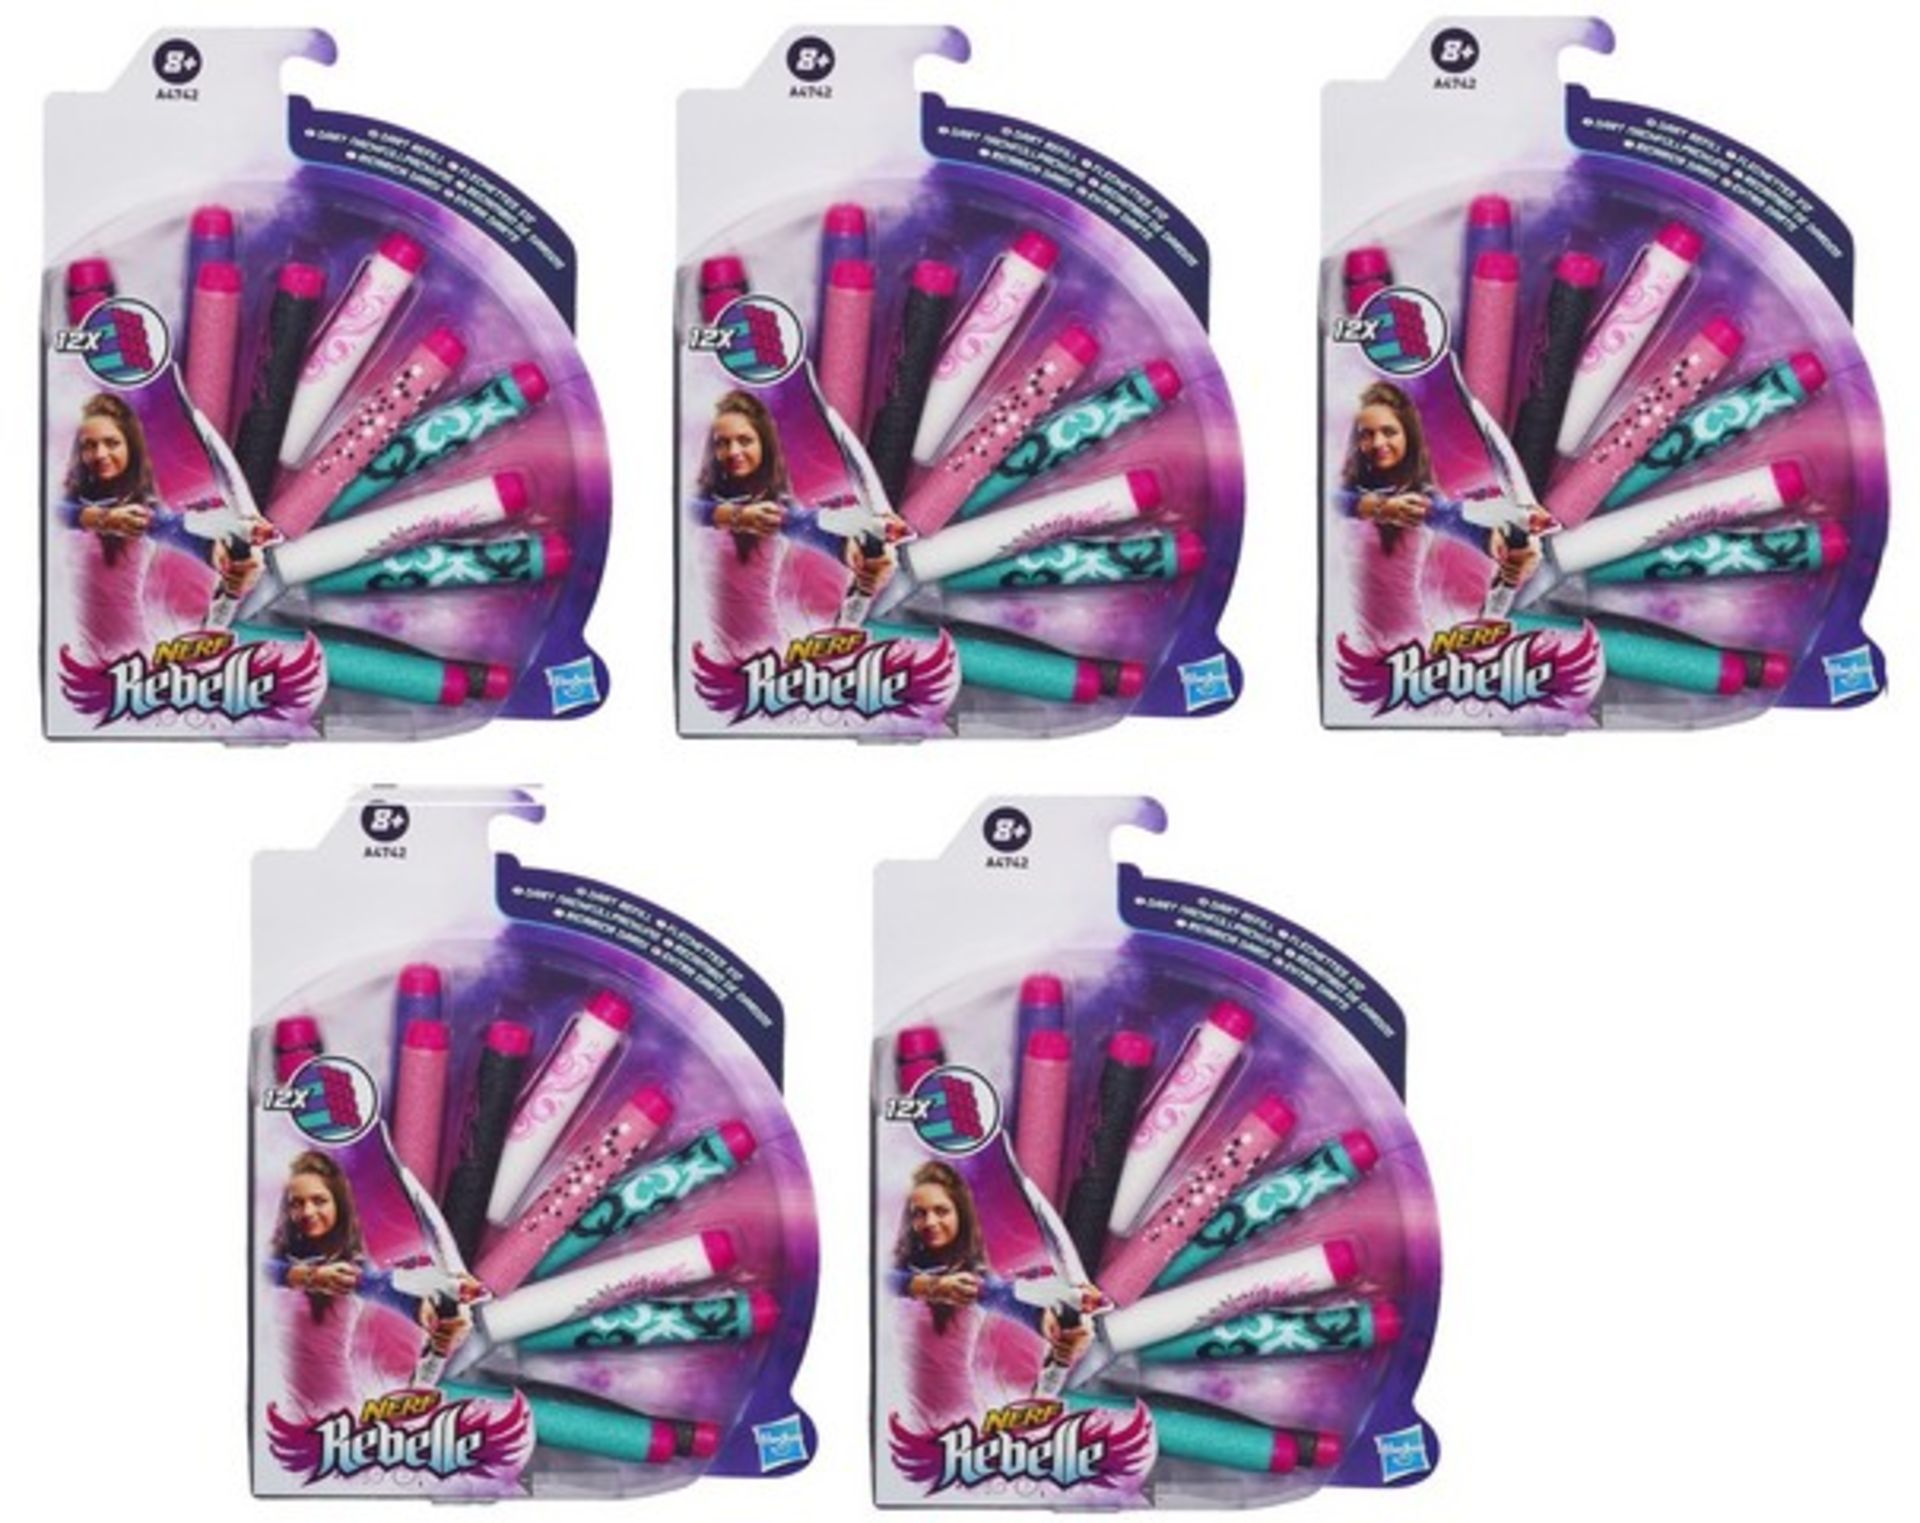 V Brand New 5 Packs Hasbro Nerf Rebelle 12 x Dart Refill - Amazon Price £37.85 - Image 2 of 2